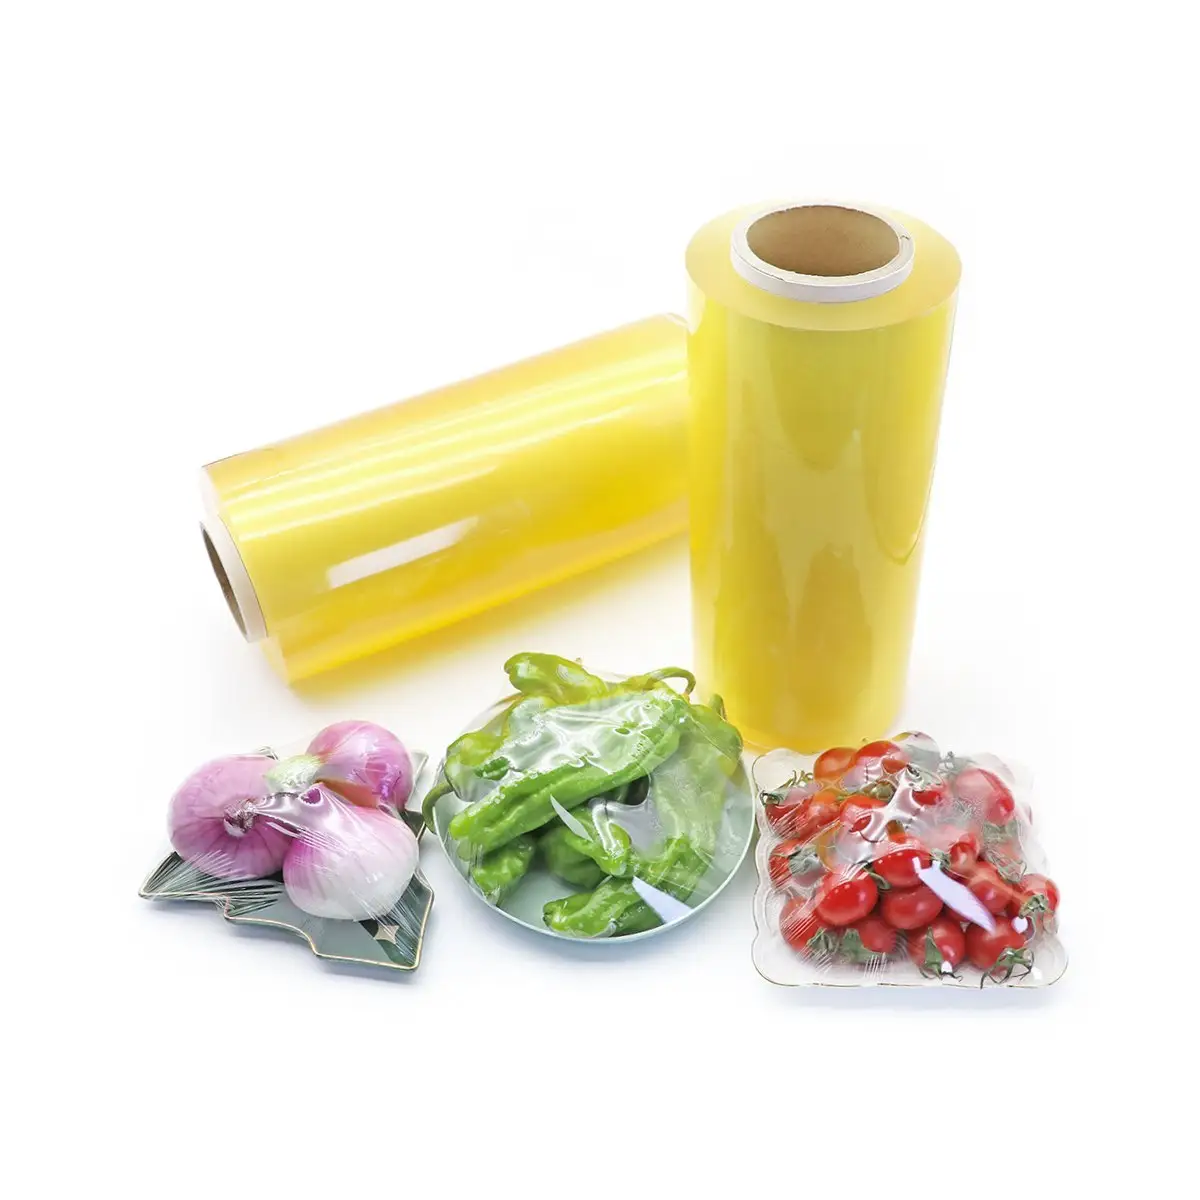 Rouleau de film alimentaire durable en PVC, film extensible extensible pour emballage alimentaire en plastique pour la cuisine